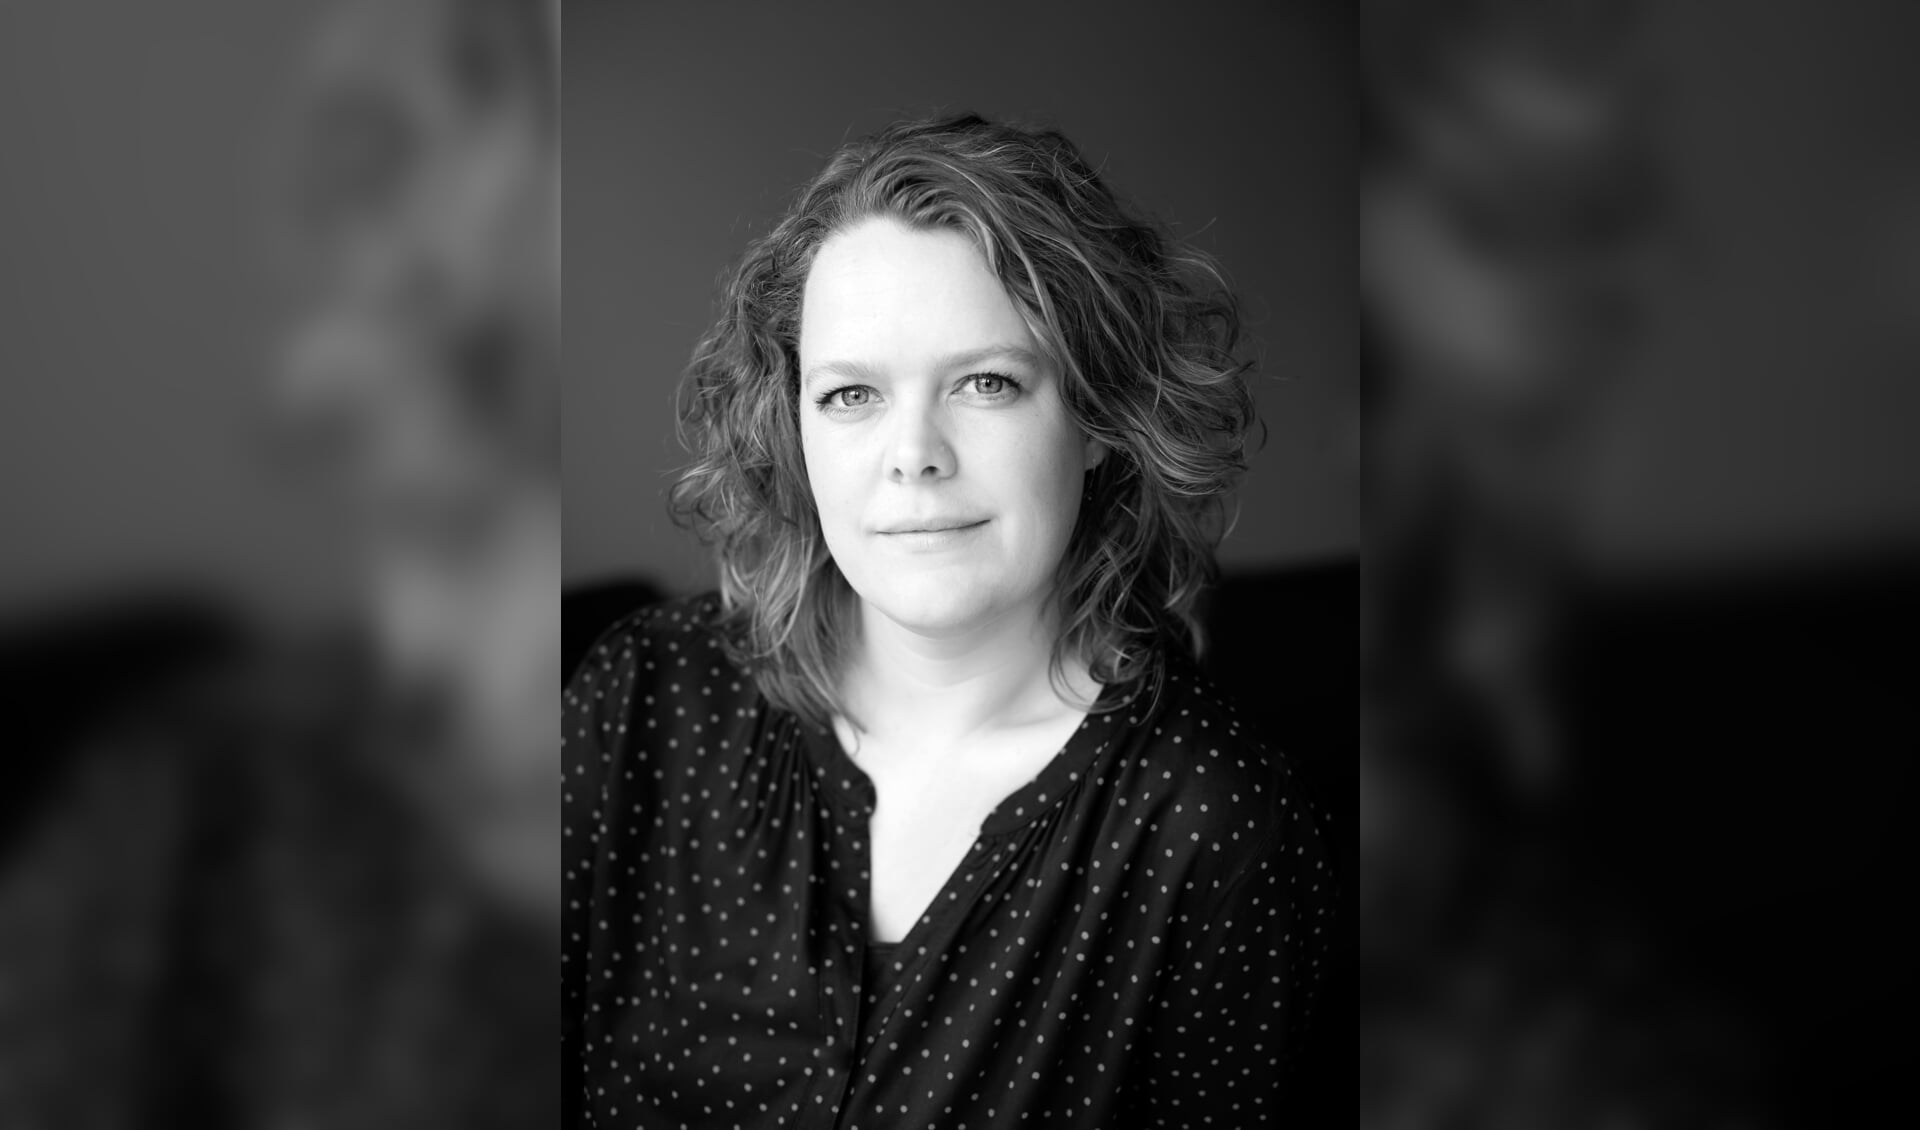 Portret auteur Janke Reitsma, Zwolle, 2021.